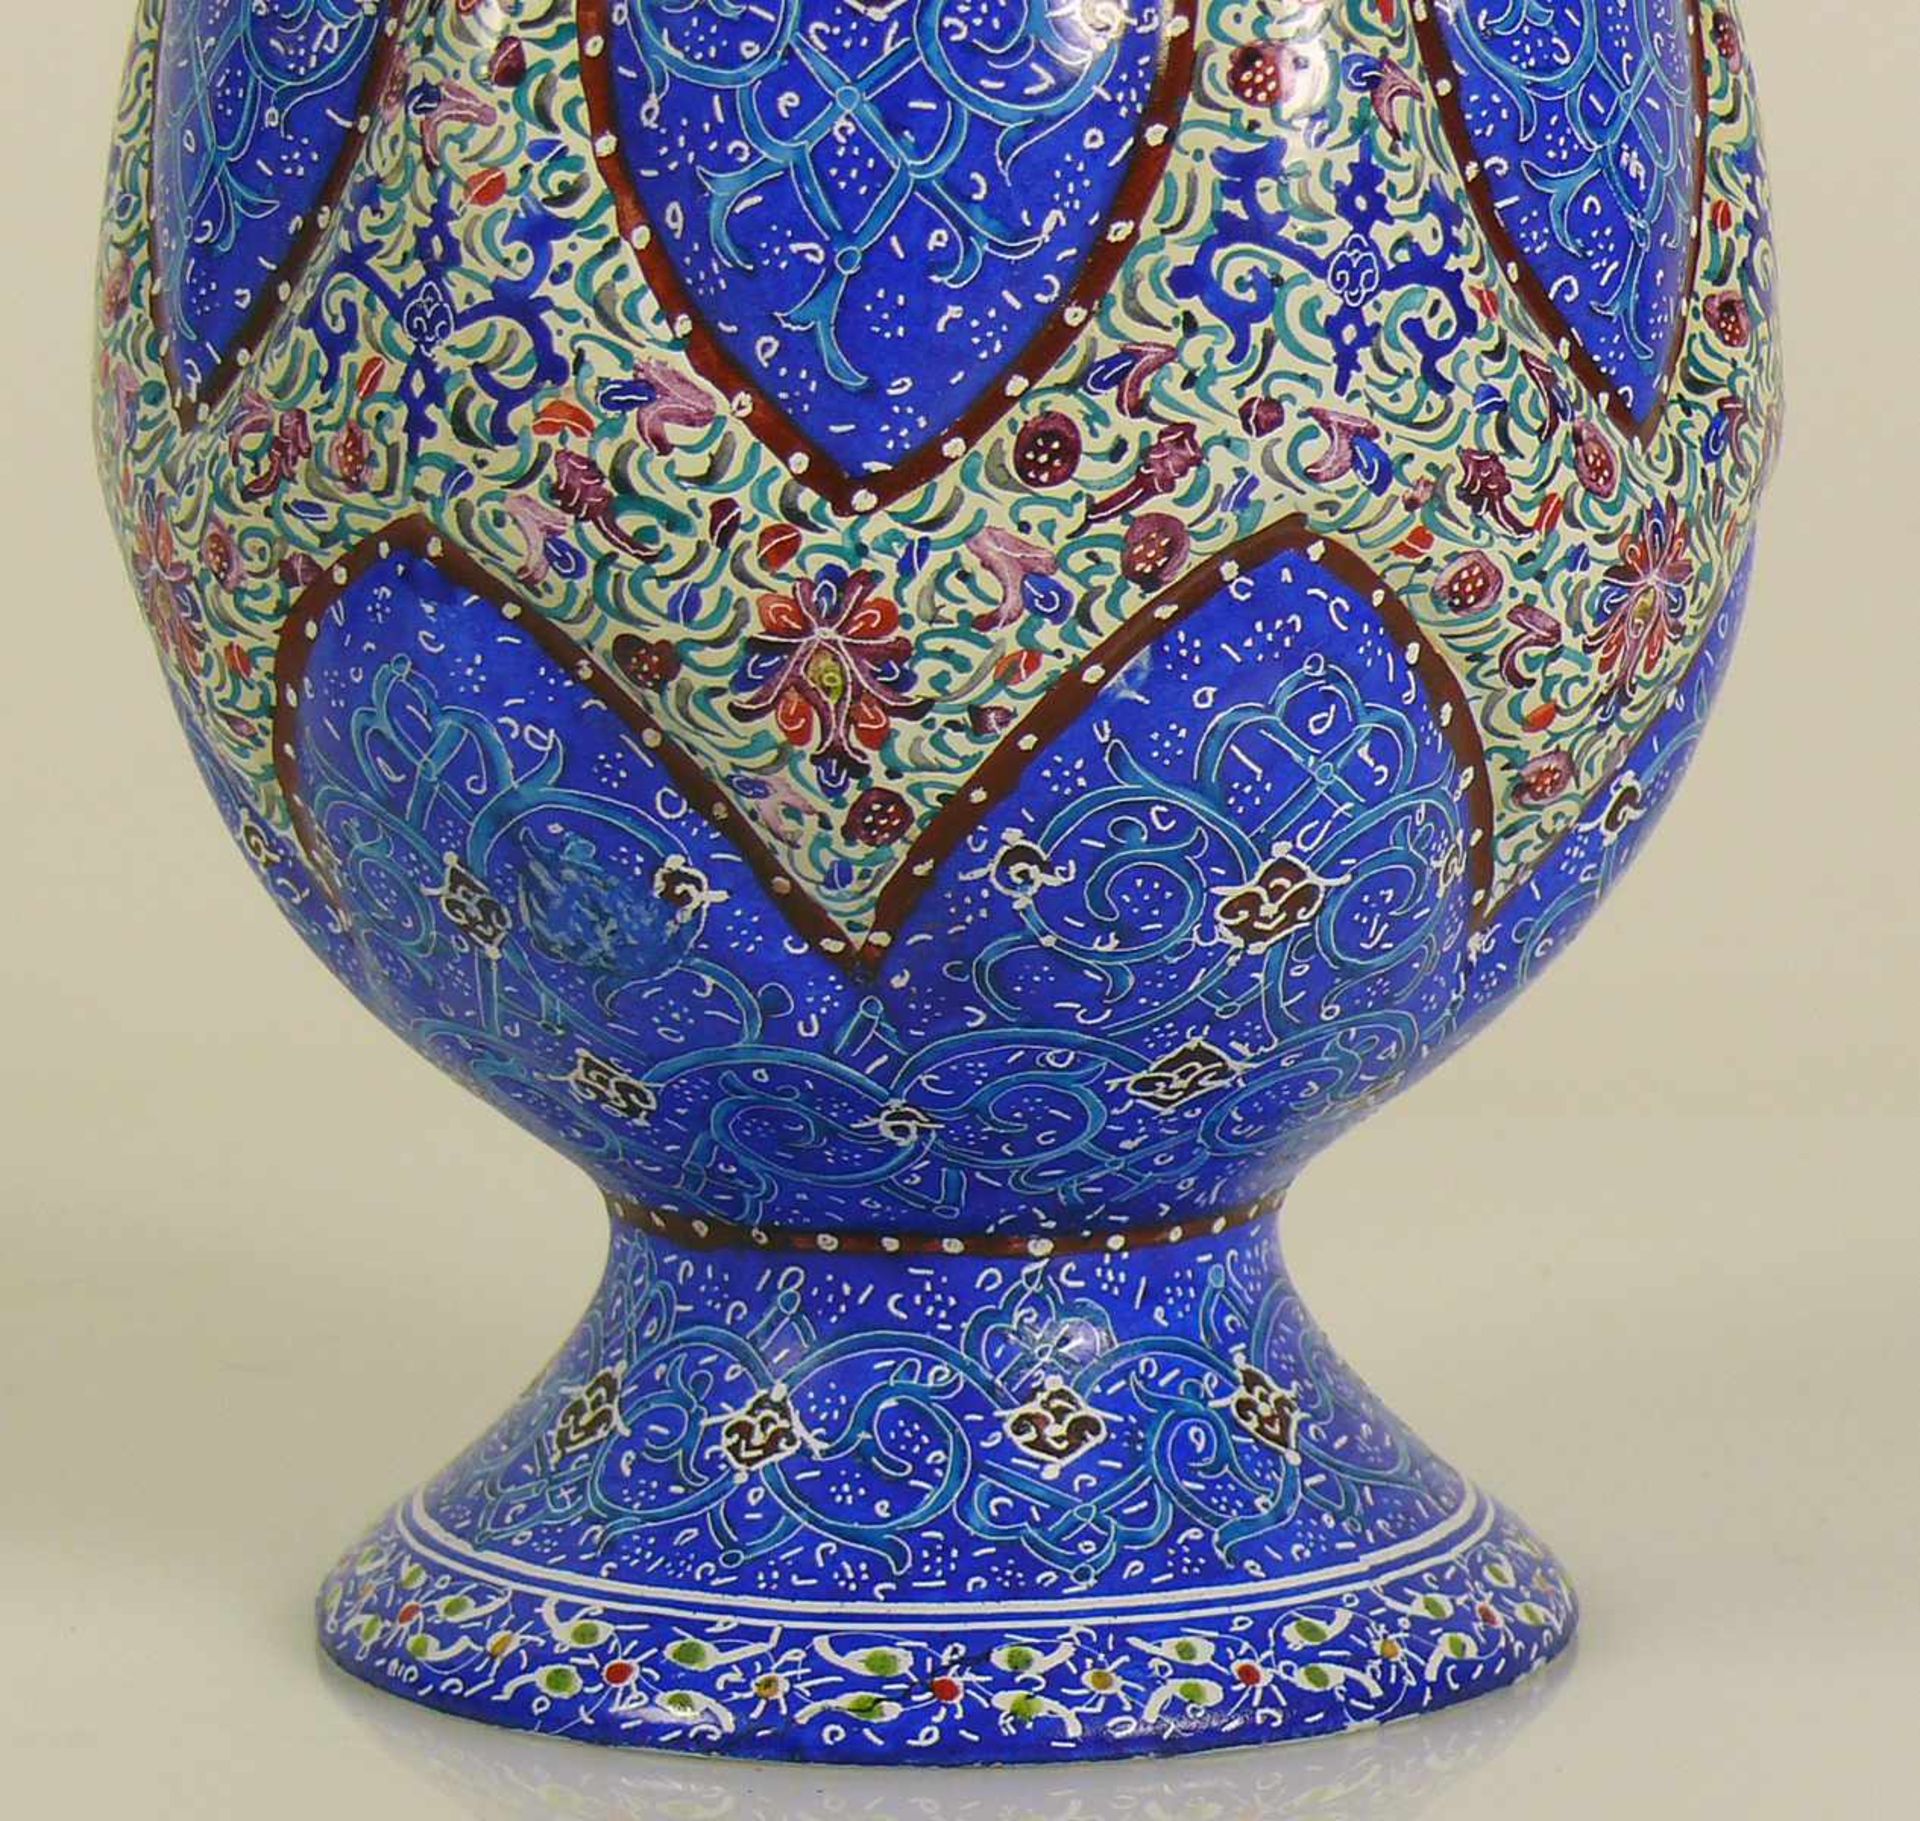 Cloisonné-Vase kegelförmiger Korpus auf eingezogenem runden Stand; nach oben tailliert; farbiger - Bild 2 aus 3